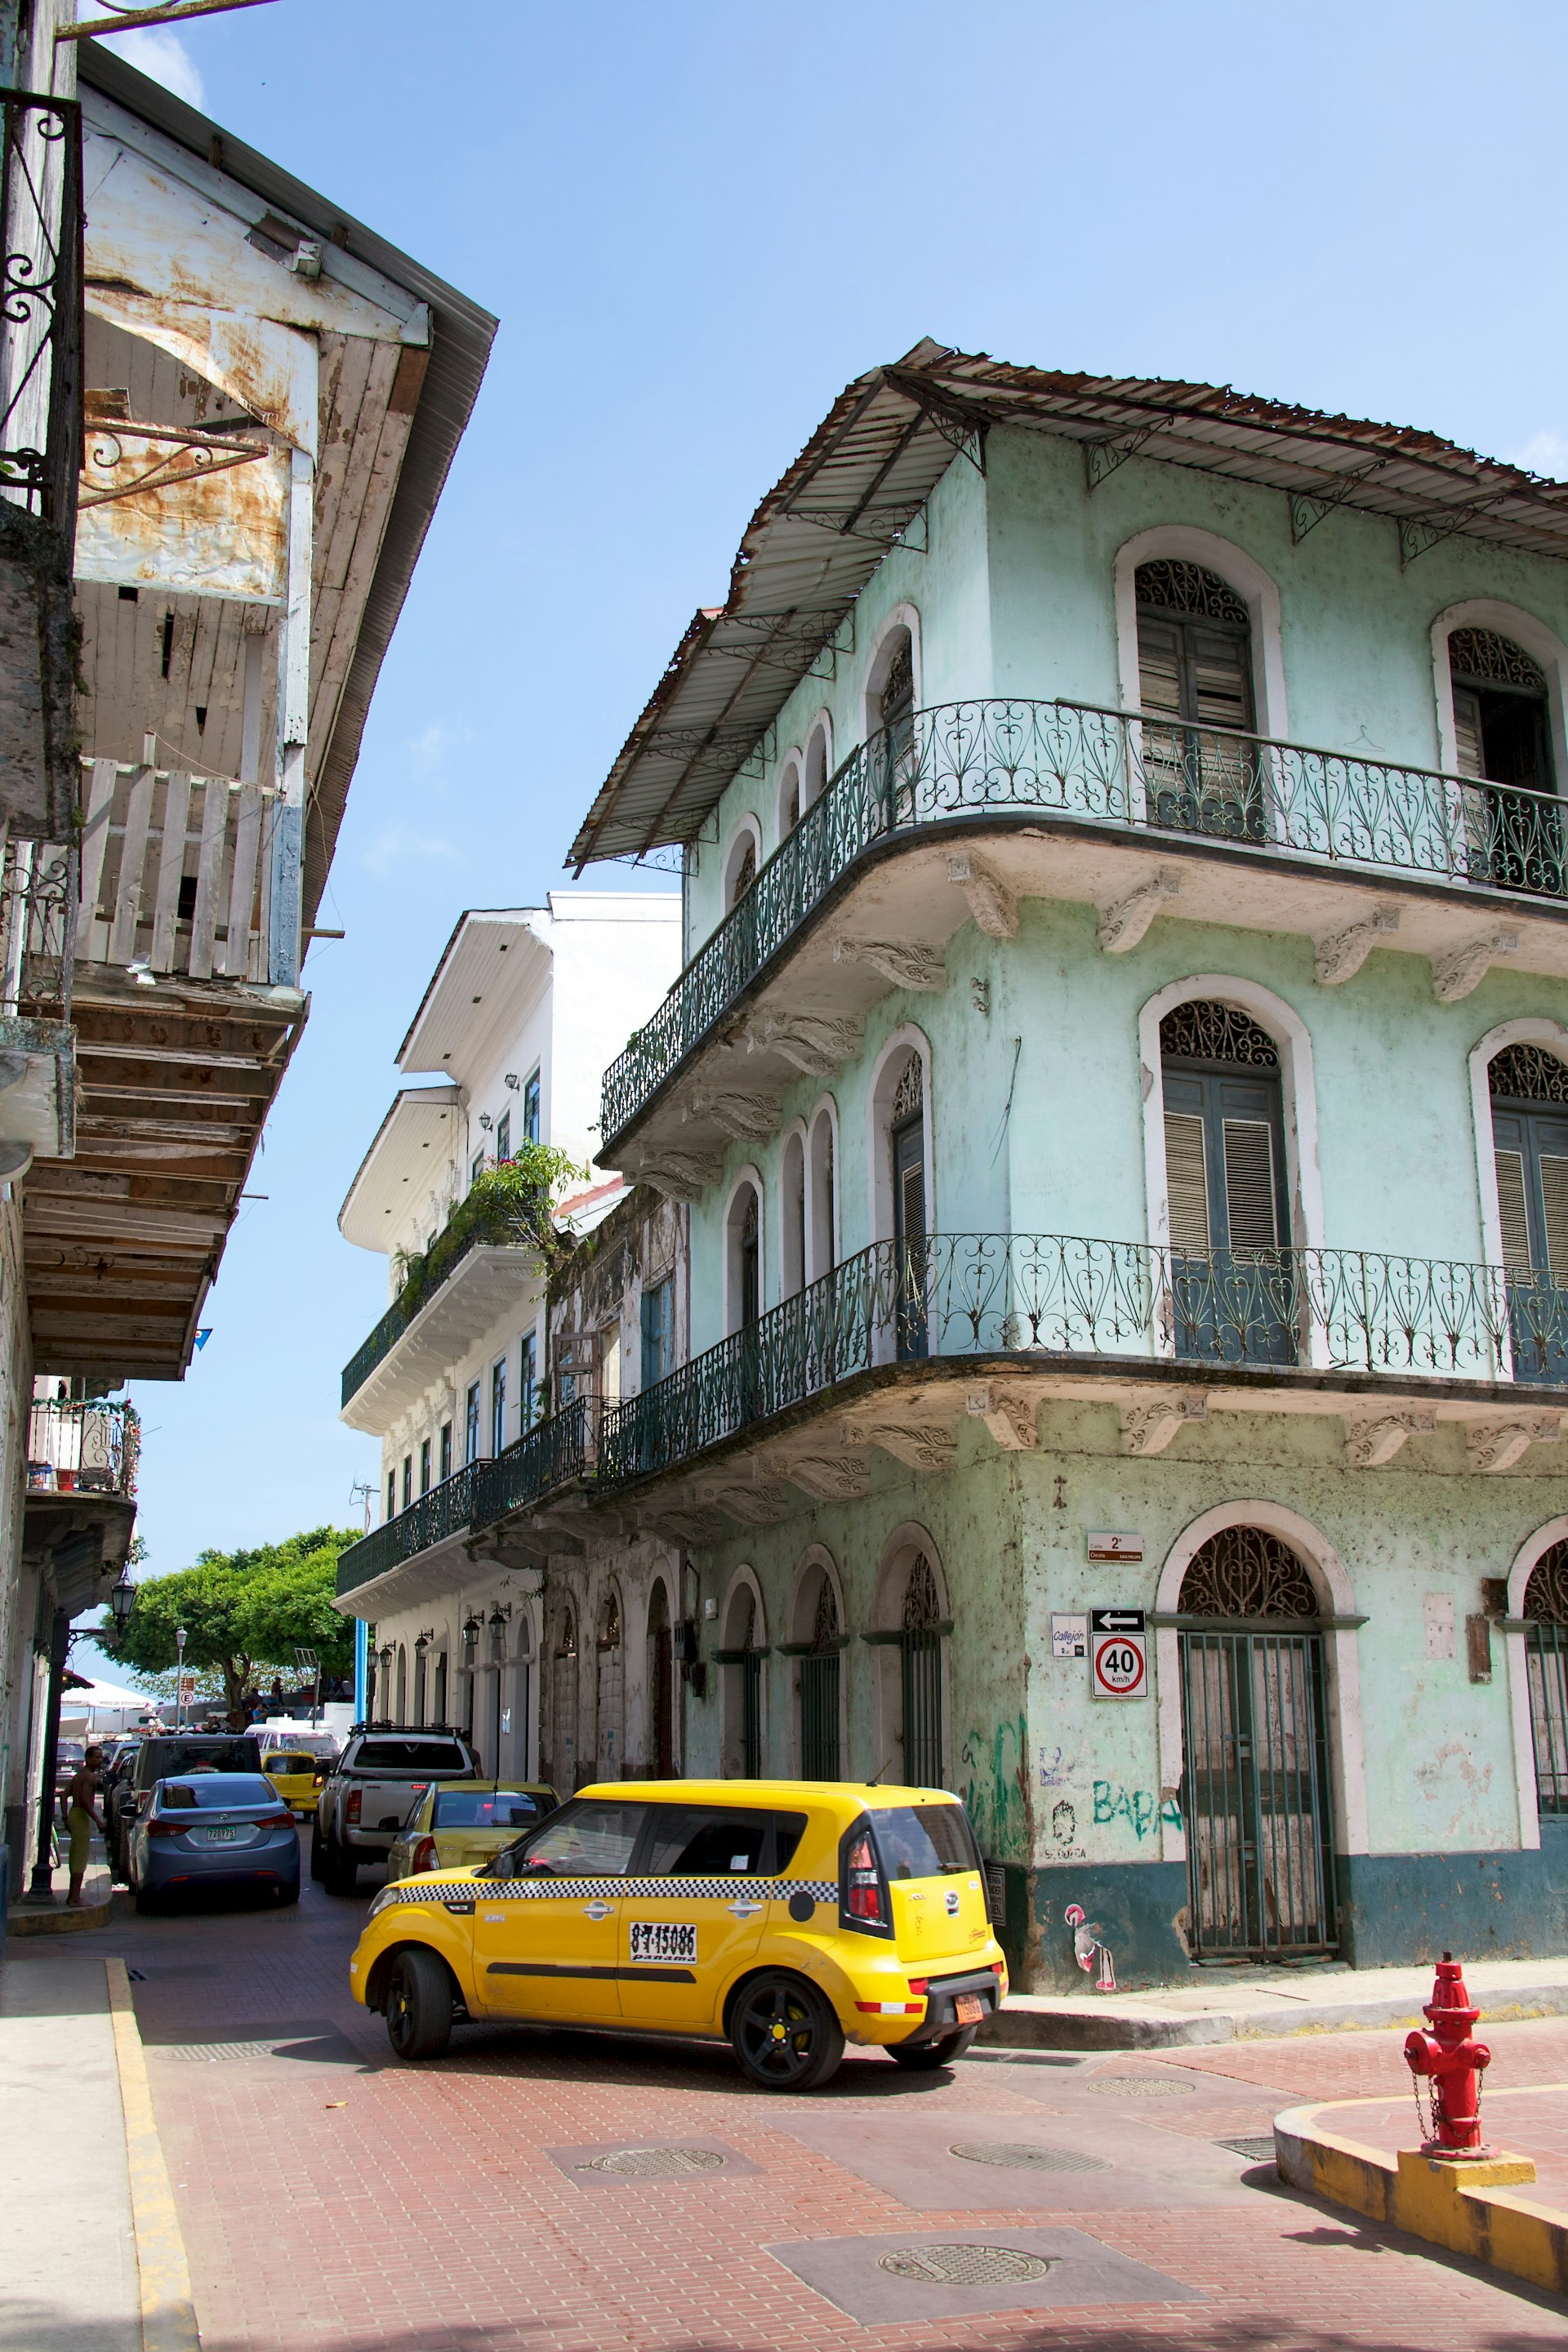 The narrow streets of Casco Viejo, the historic district of Panama City Panama